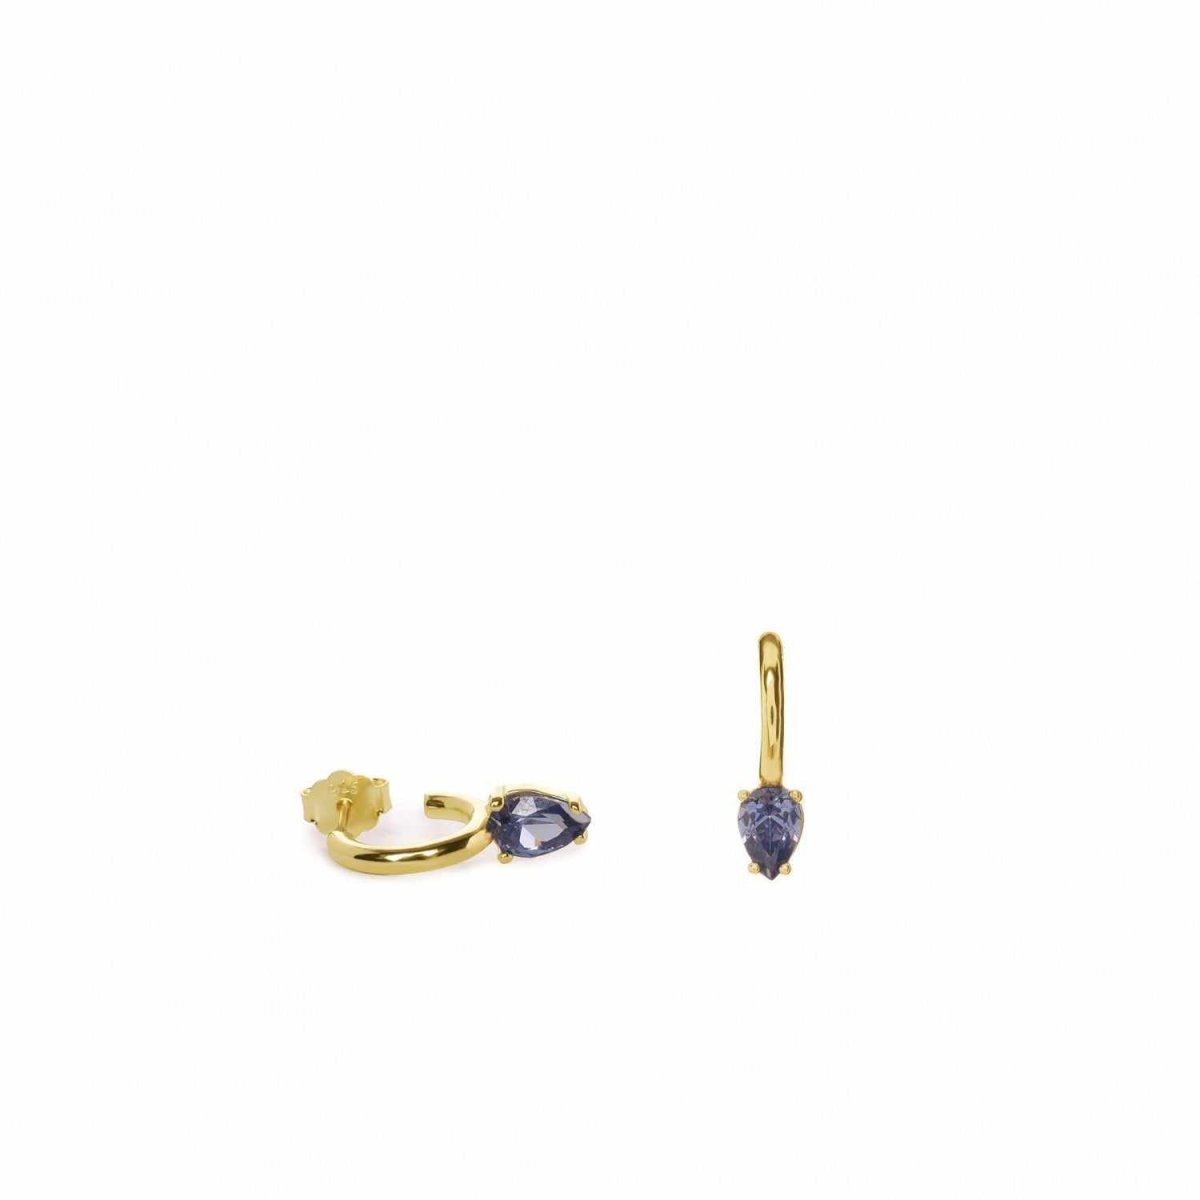 Pendiente · Pendientes aros pequeños bañados en oro diseño cuarzo adamantino perilla azul